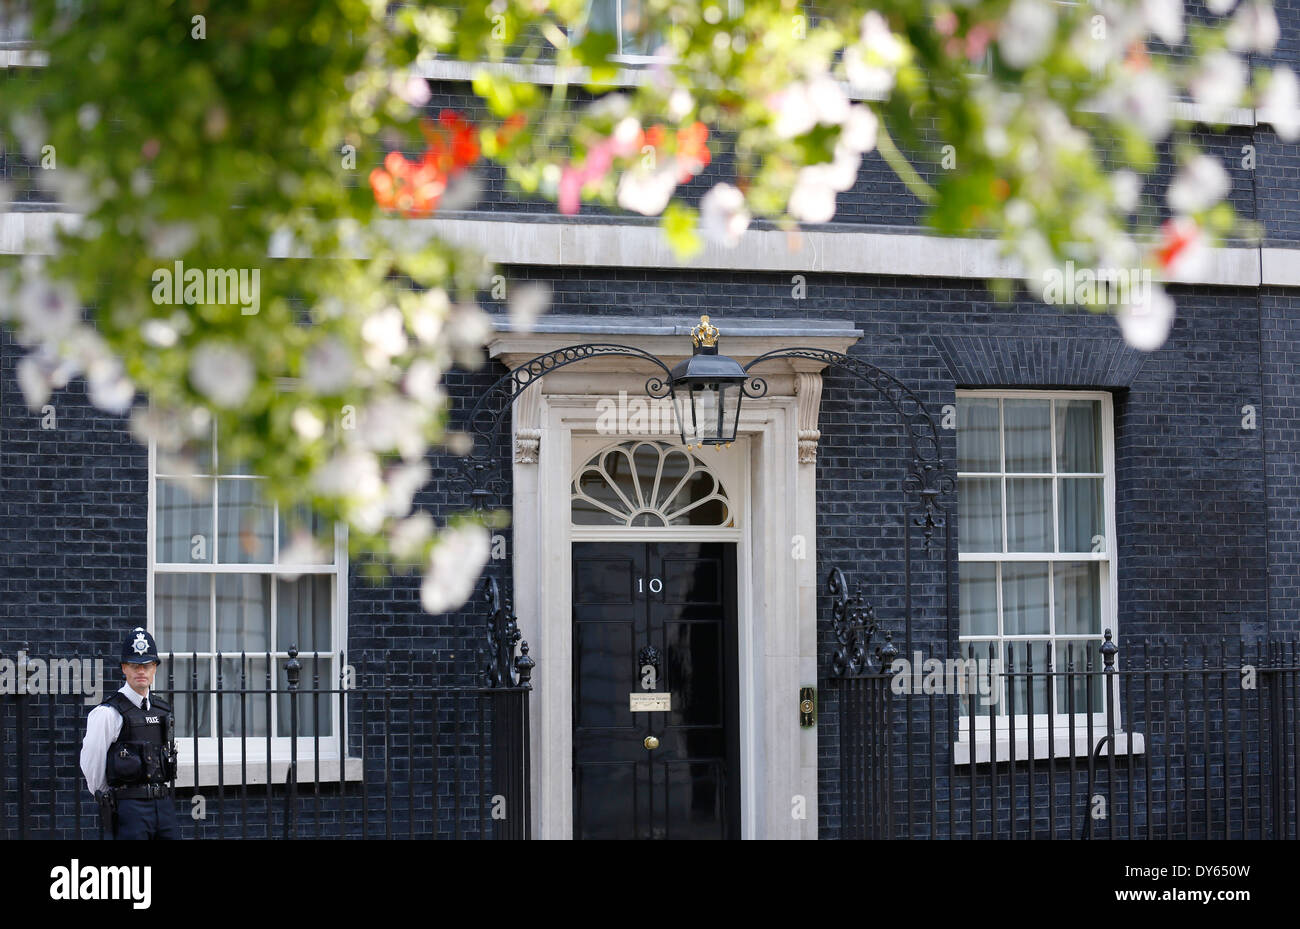 Großbritannien, London: Number 10 Downing Street, Heimat des britischen Premierministers, ist an einem sonnigen Tag in London abgebildet. Stockfoto